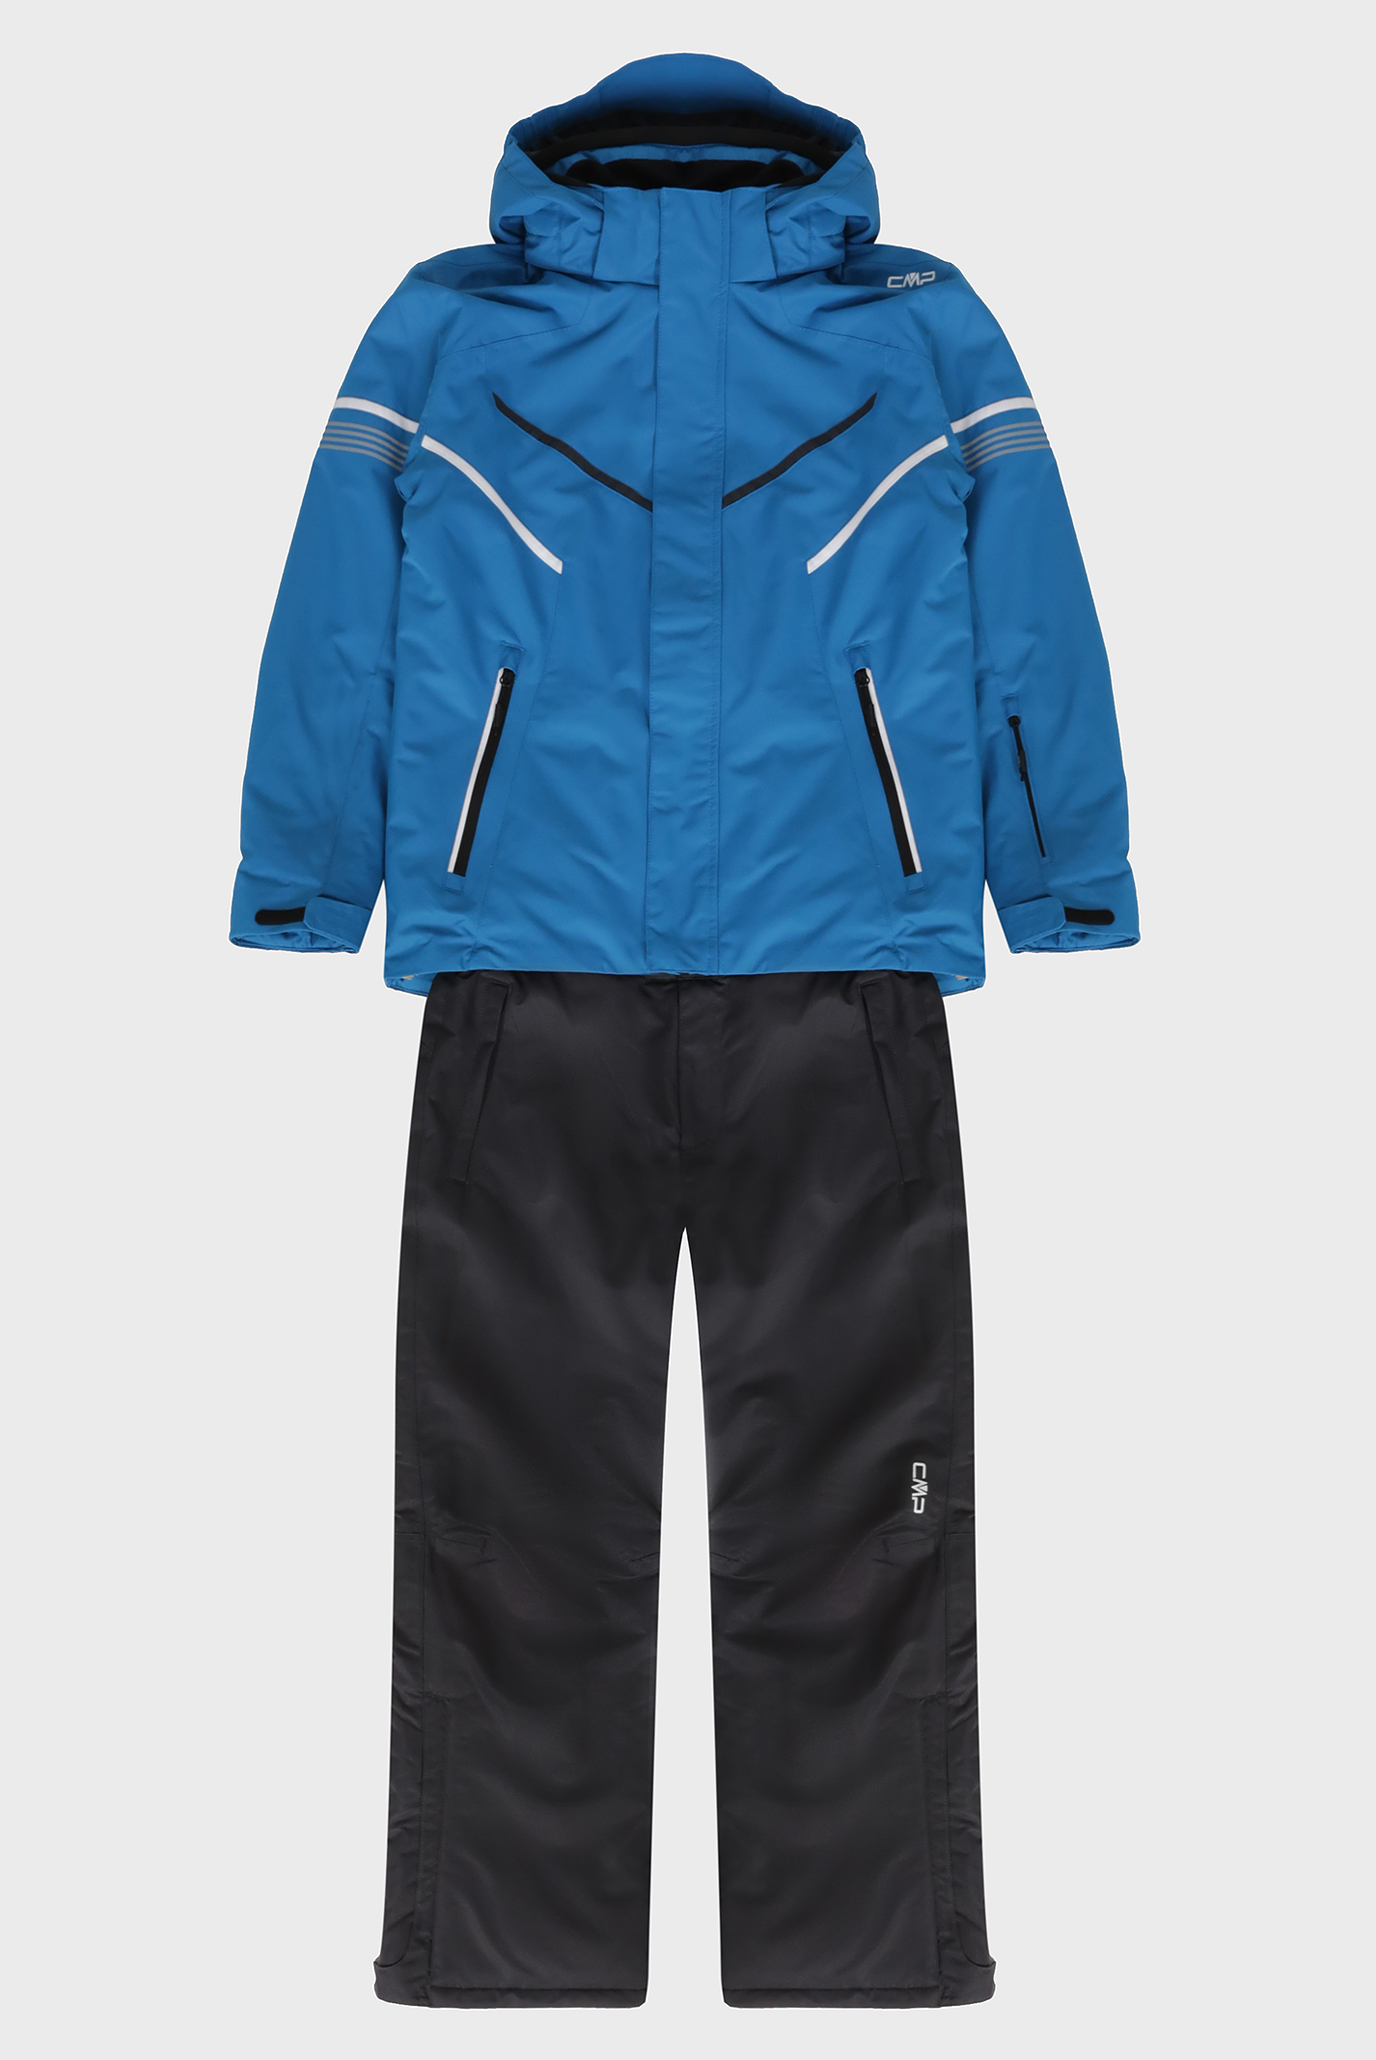 Детский синий лыжный костюм (куртка, брюки) 1